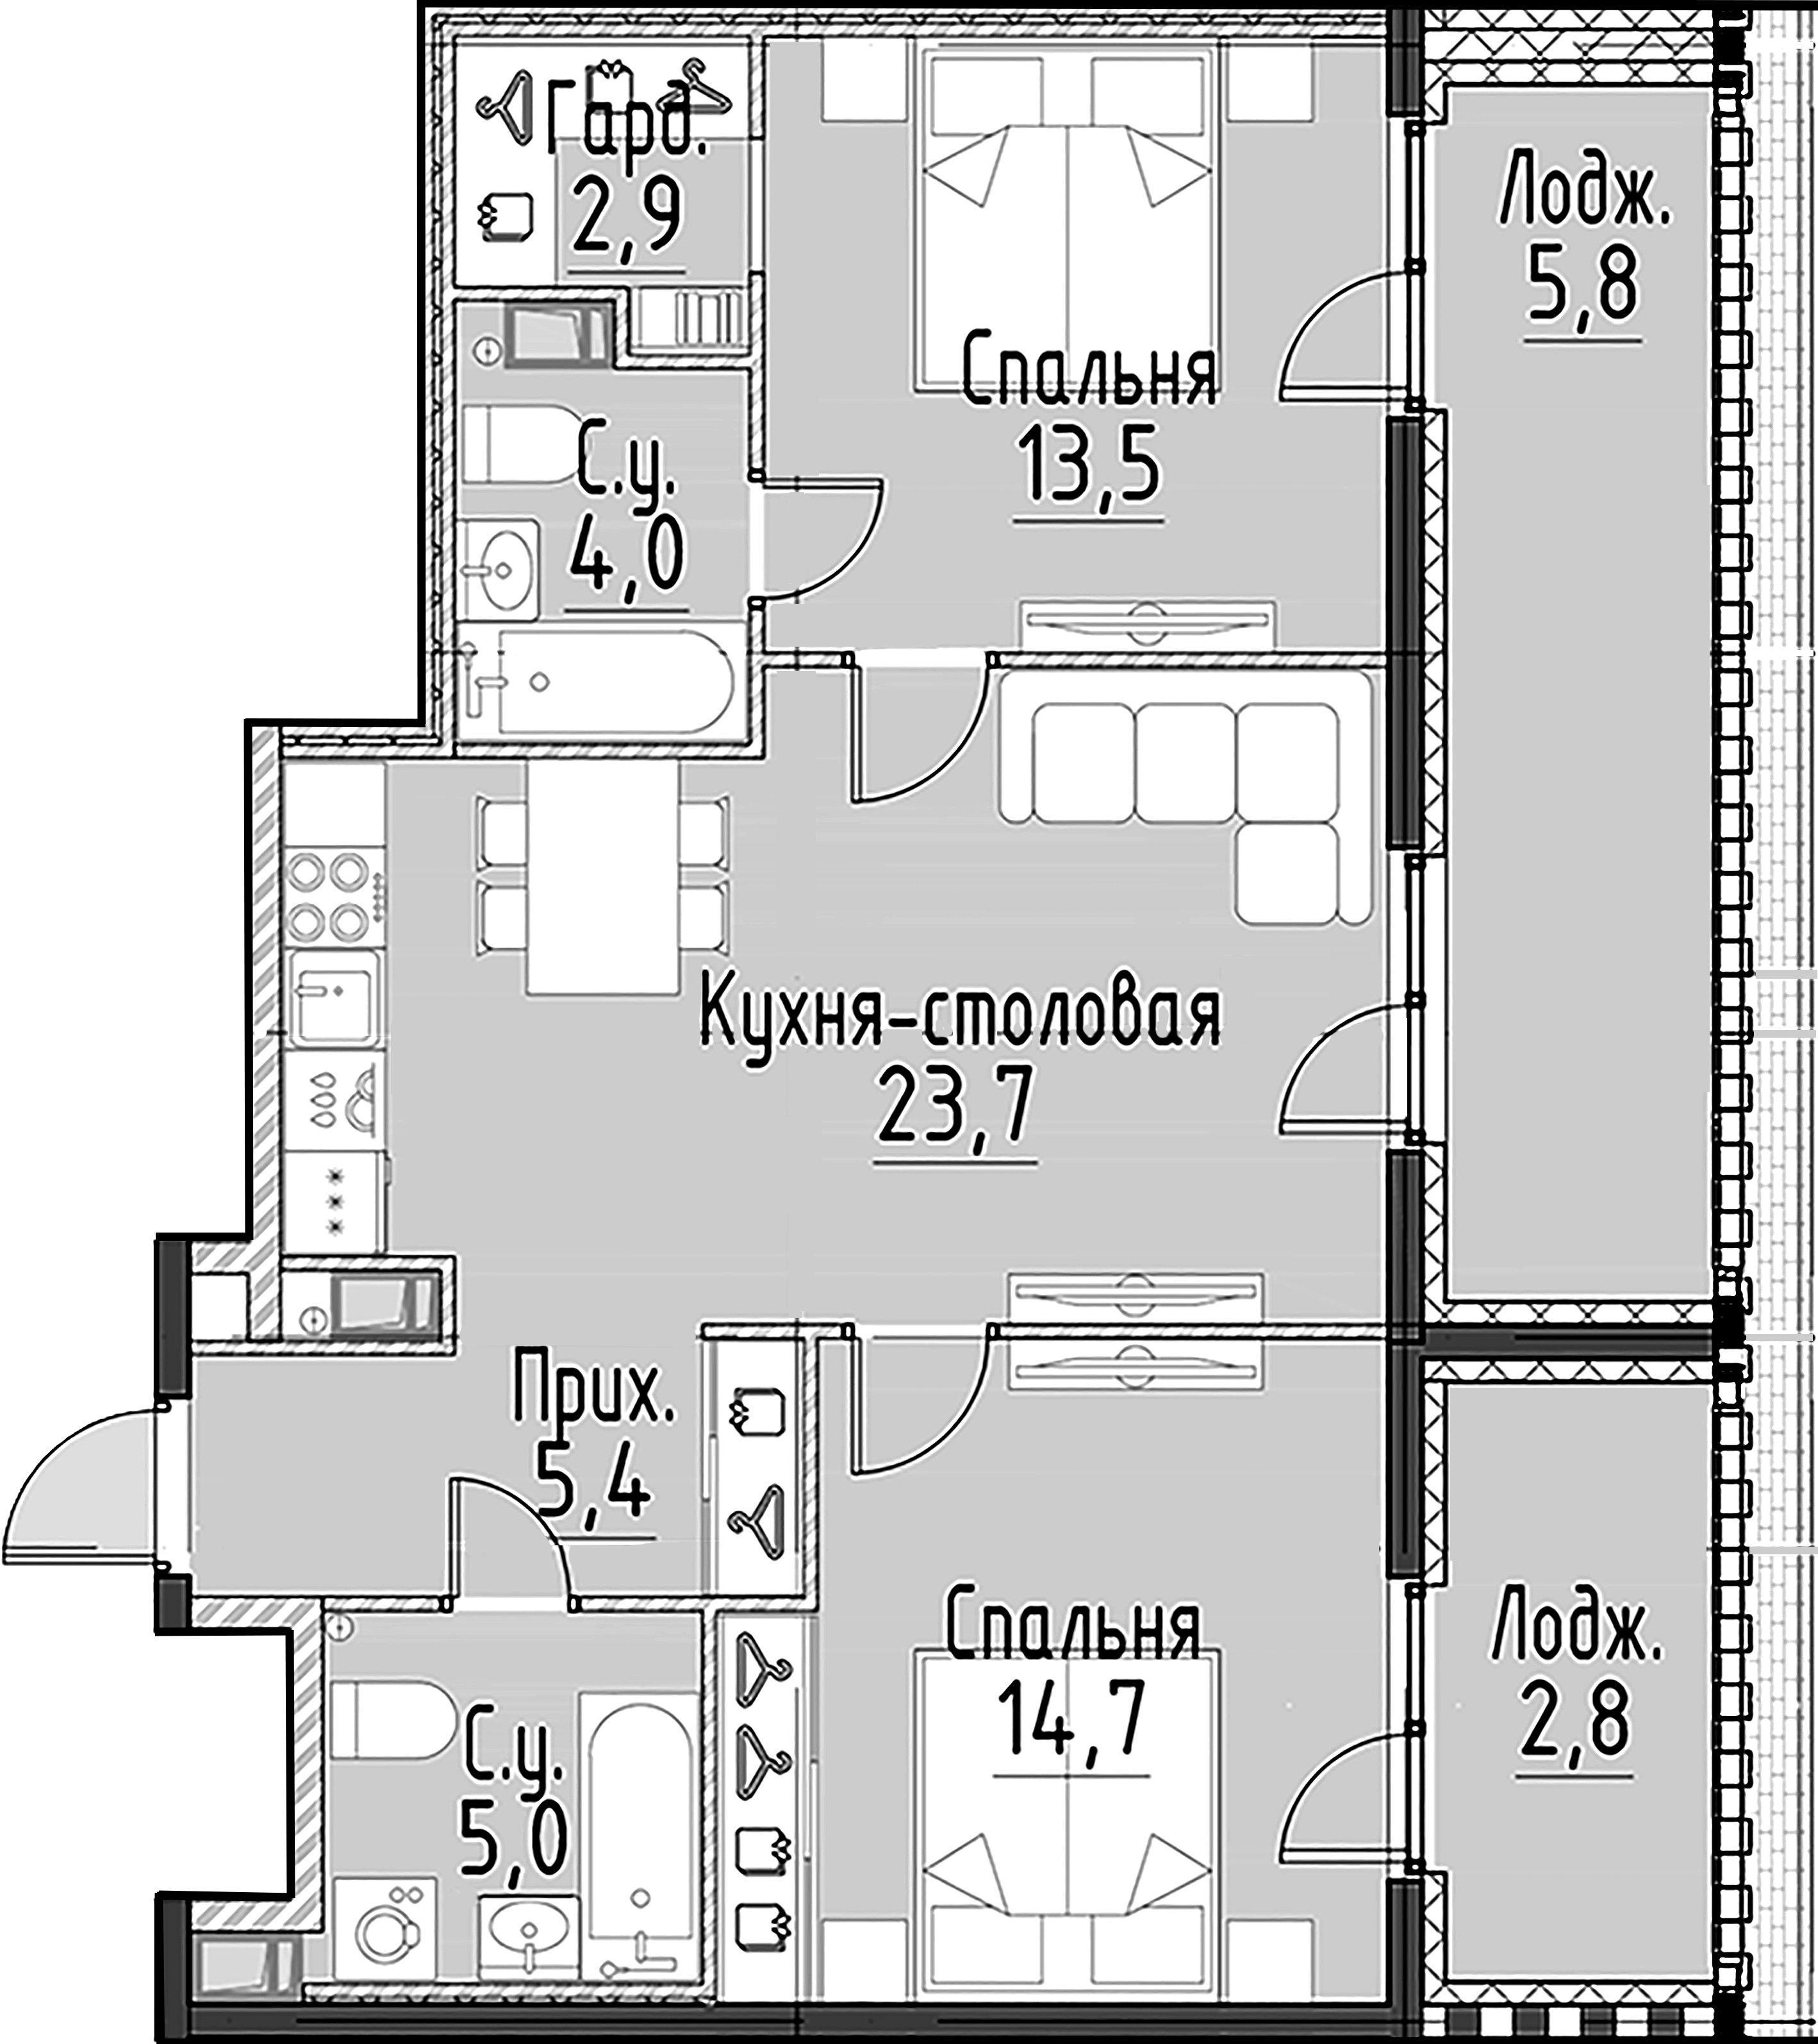 2-комнатная квартира  №119 в Моисеенко, 10: 69.3 м², этаж 6 - купить в Санкт-Петербурге